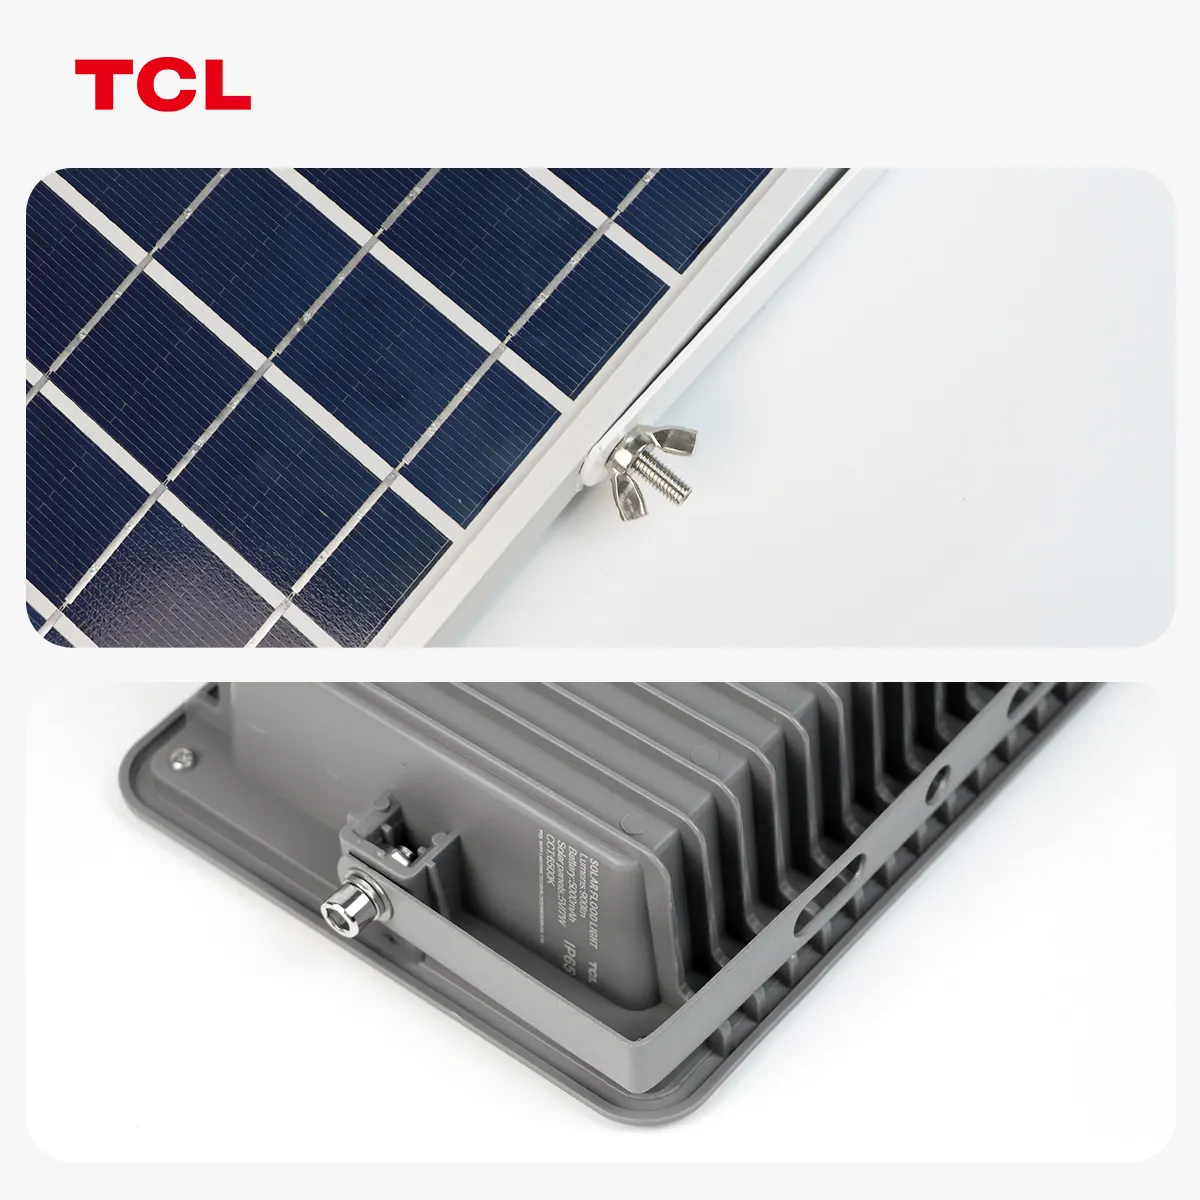 أضواء TCL IP65 3000K/4000K/6500K مضادة للماء تعمل عن طريق الرادار أضواء خارجية تعمل بالطاقة الشمسية أضواء خارجية تعمل بالطاقة الشمسية